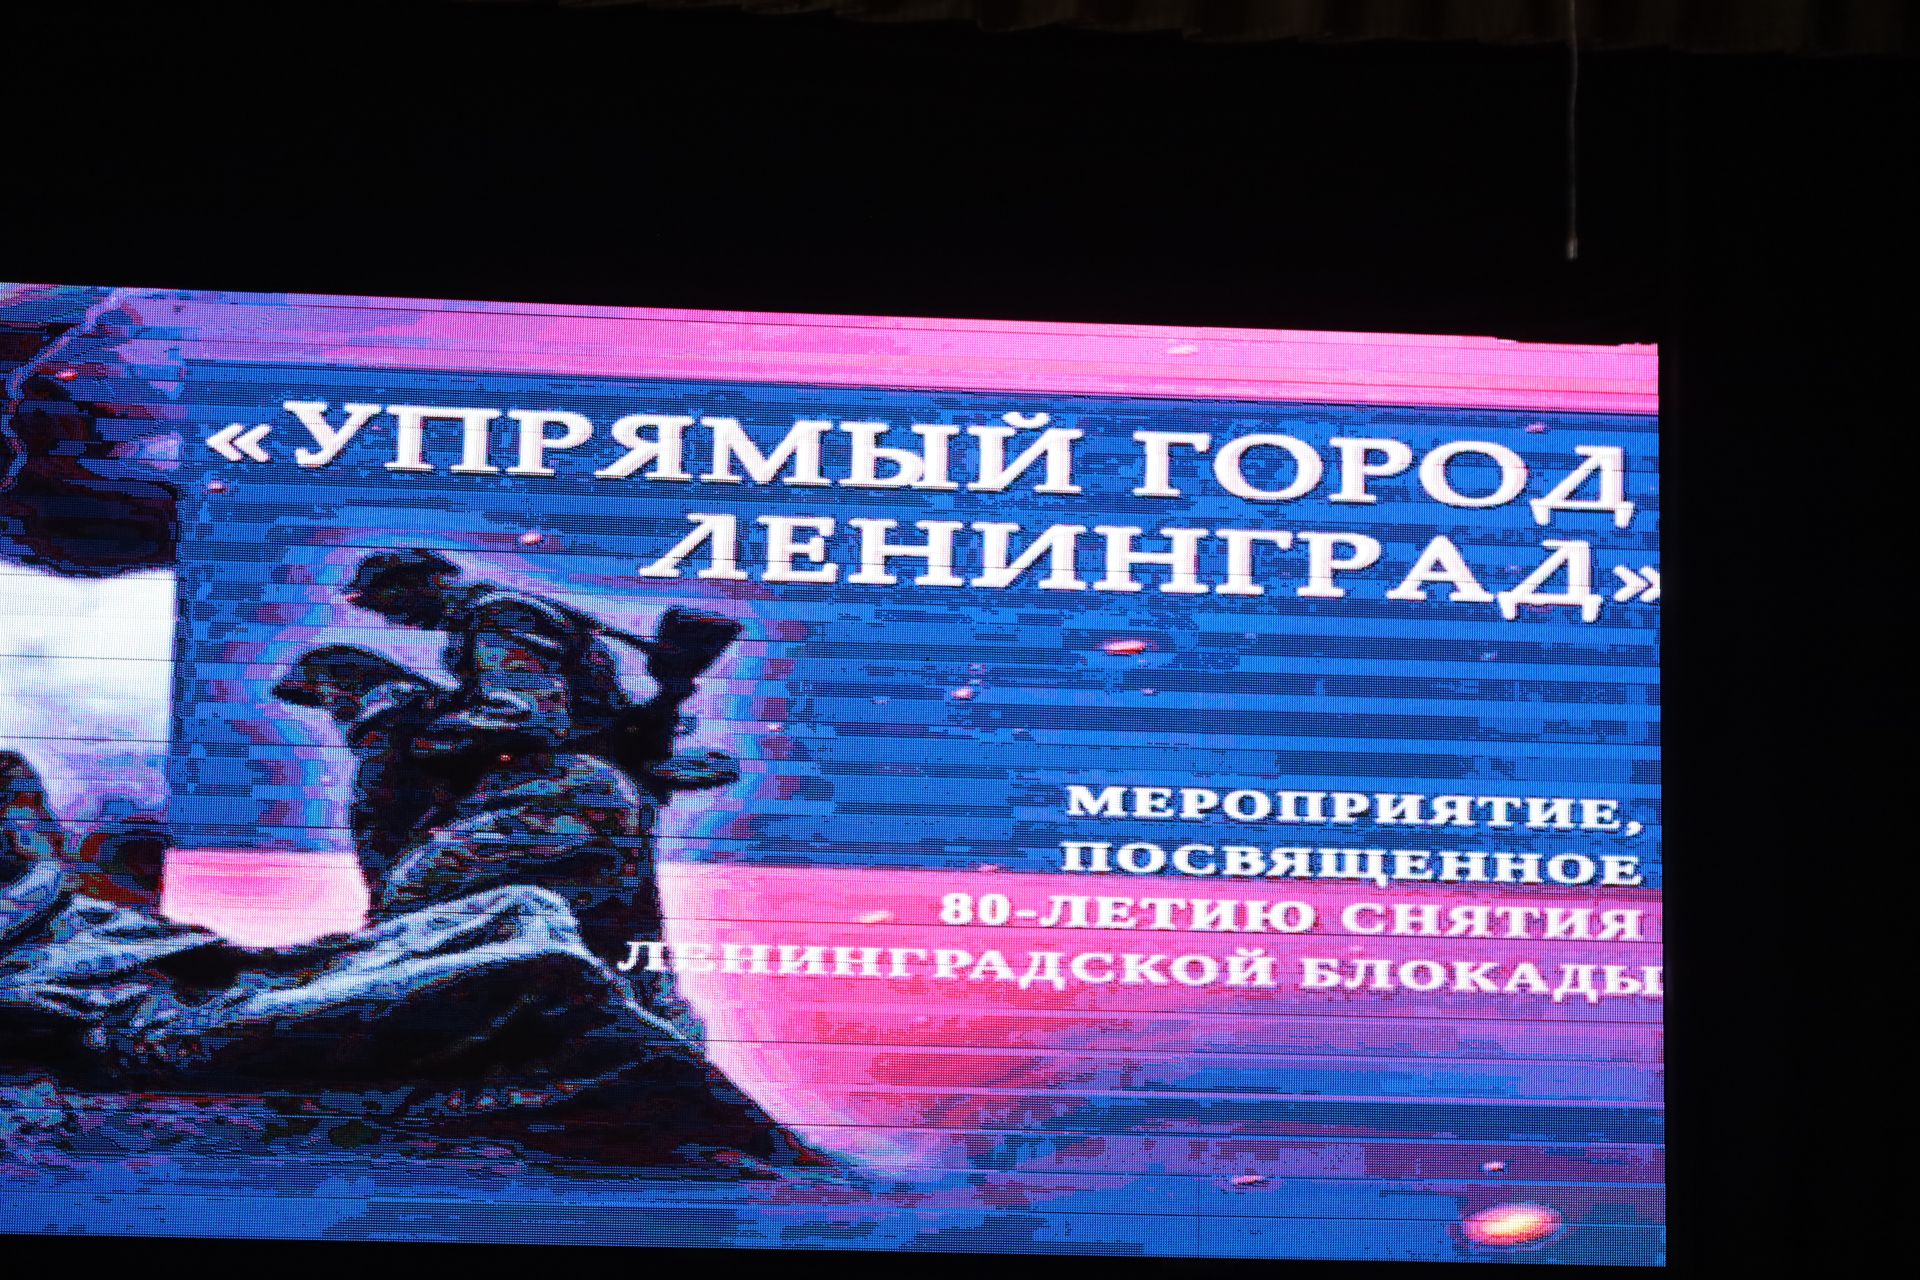 Фоторепортаж с мероприятия, посвященного 80-летию снятия ленинградской блокады «Упрямый город Ленинград»